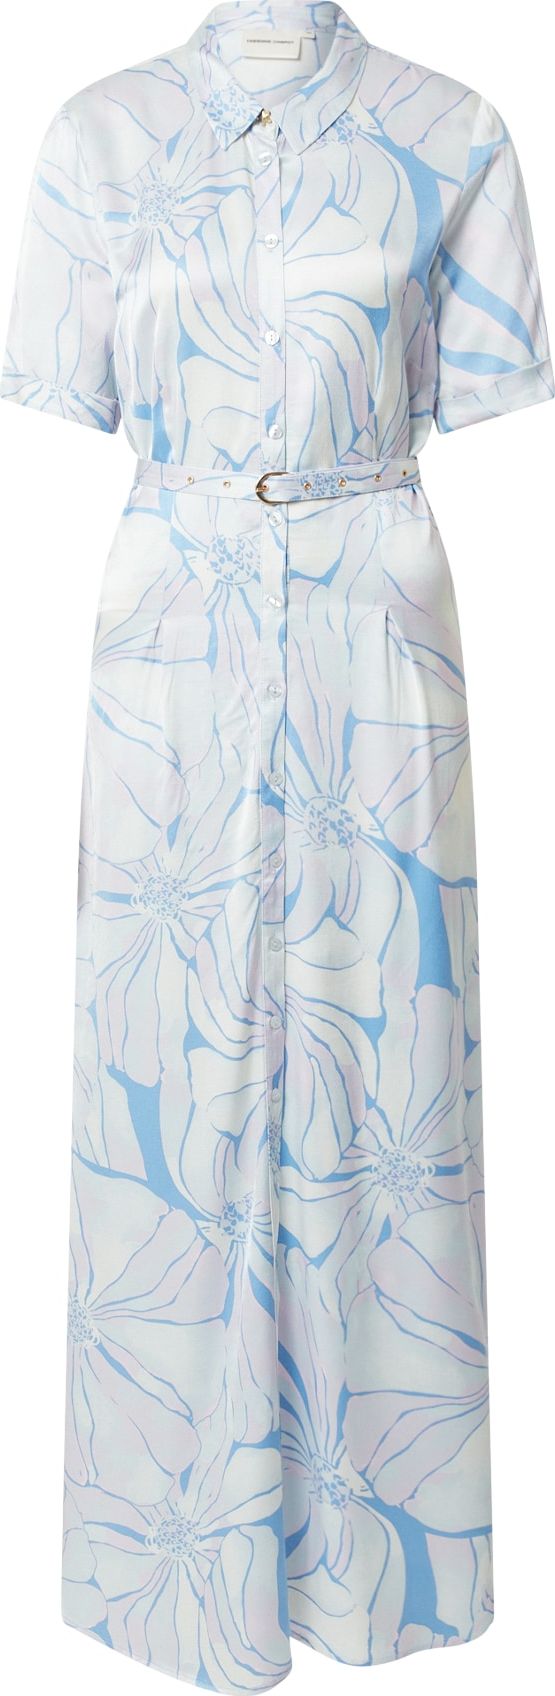 Fabienne Chapot Košilové šaty 'Mia' azurová / mátová / světlemodrá / pastelová fialová